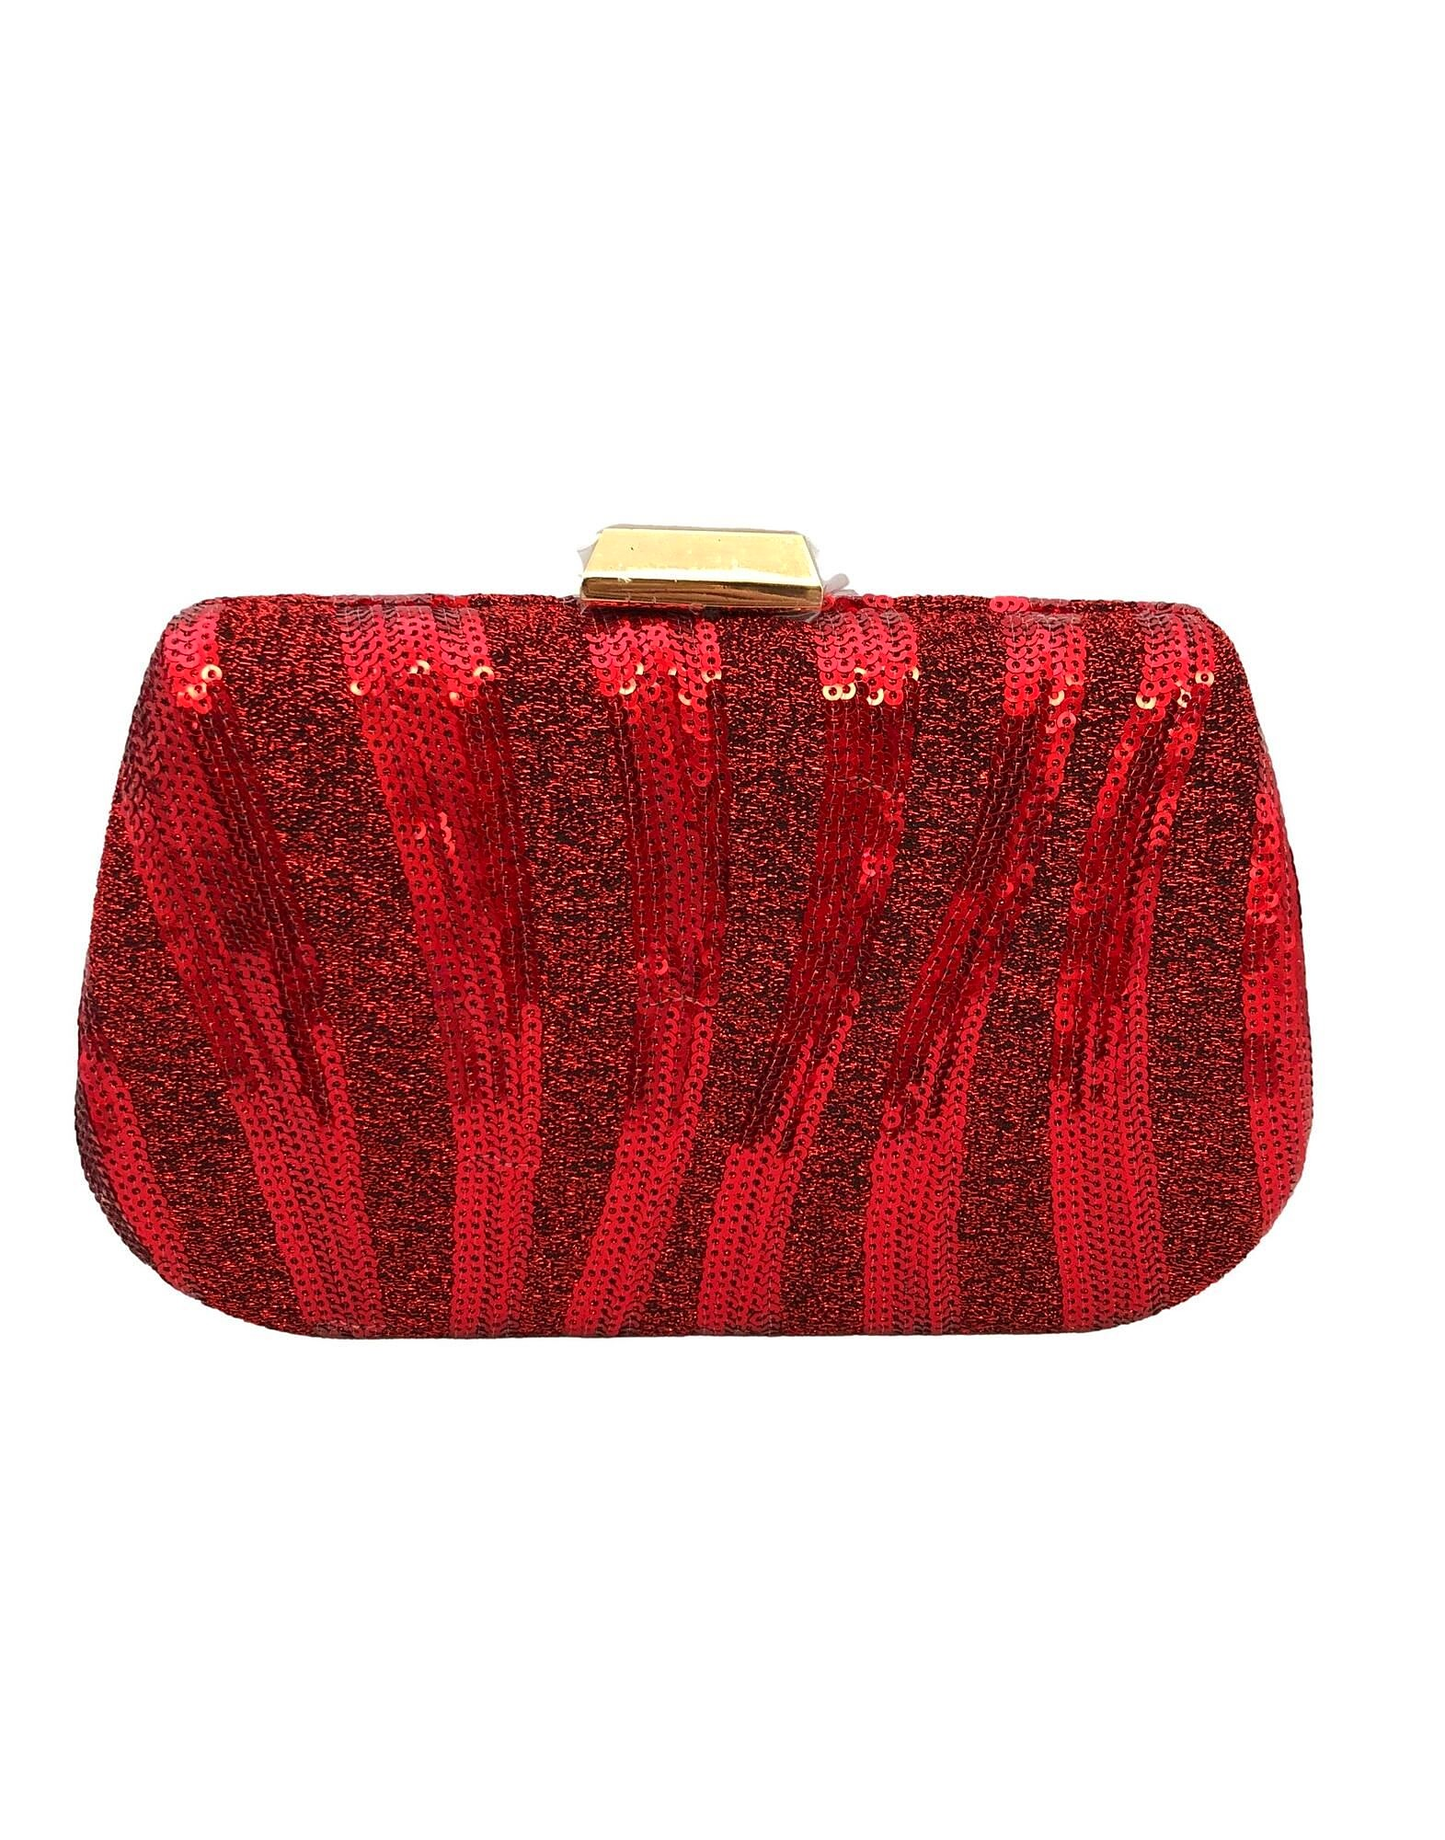 PARIOLI BAGS - Parioli Handbags -Pouch - Red